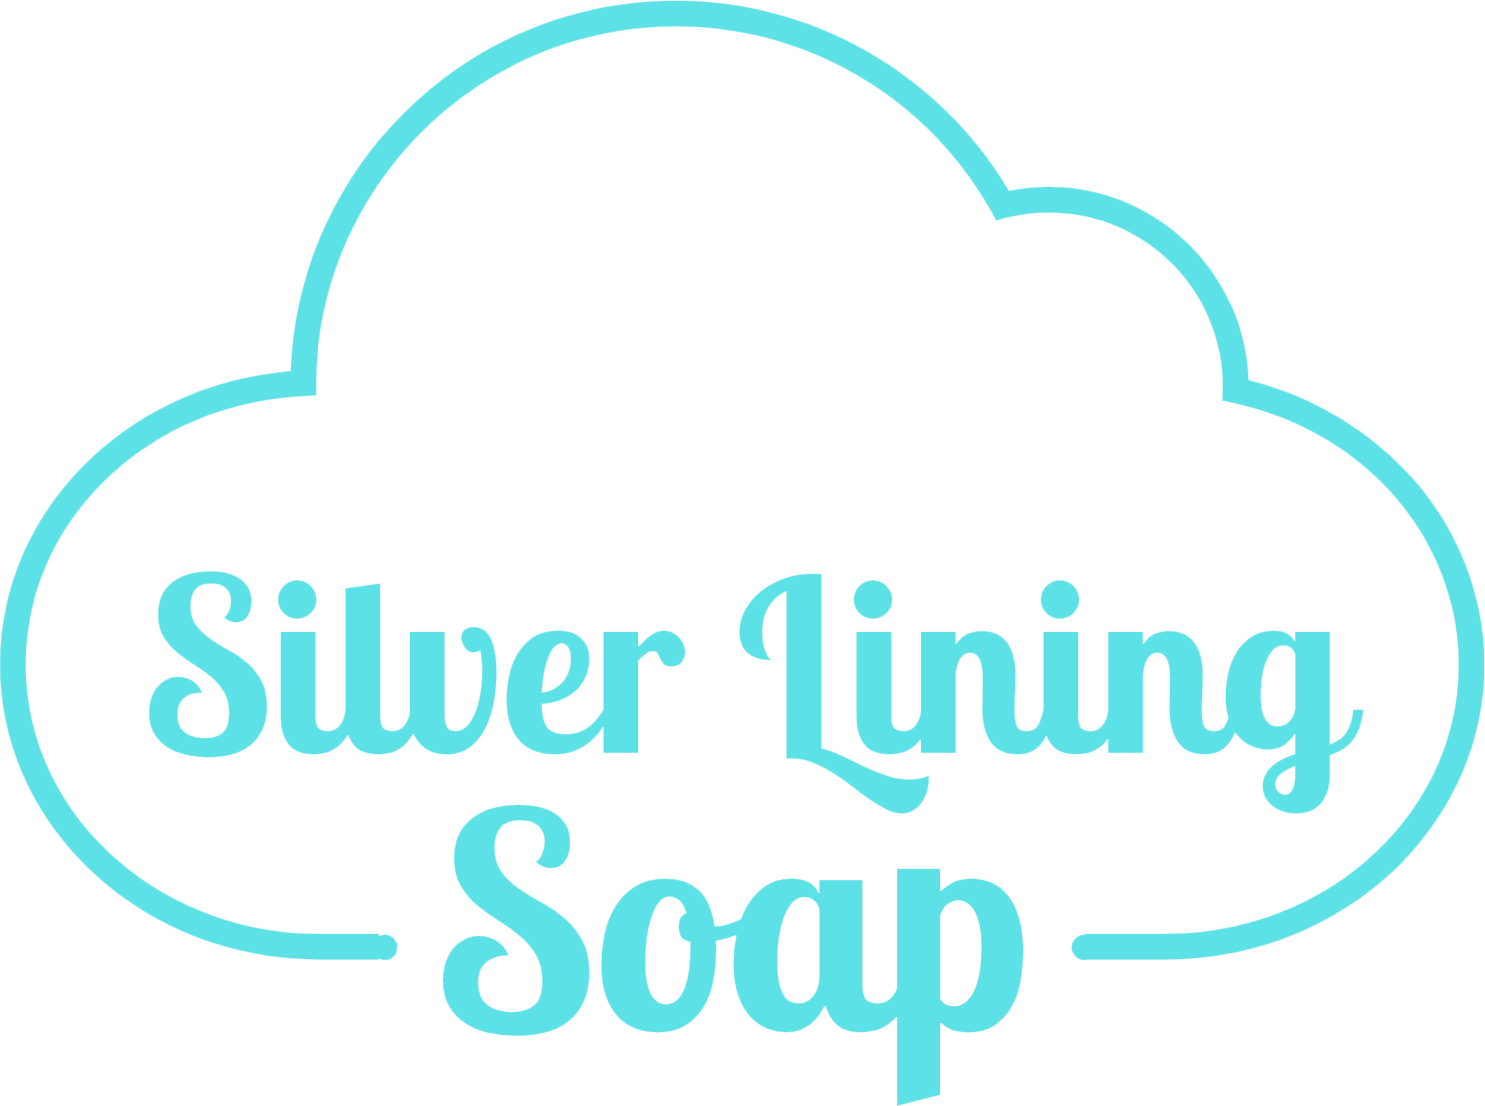 https://images.squarespace-cdn.com/content/v1/6491efb1c4269319eca875fa/2fabc116-01cc-42c7-8ce0-9e21206641cb/silver-lining-soap-logo-site-lg.png